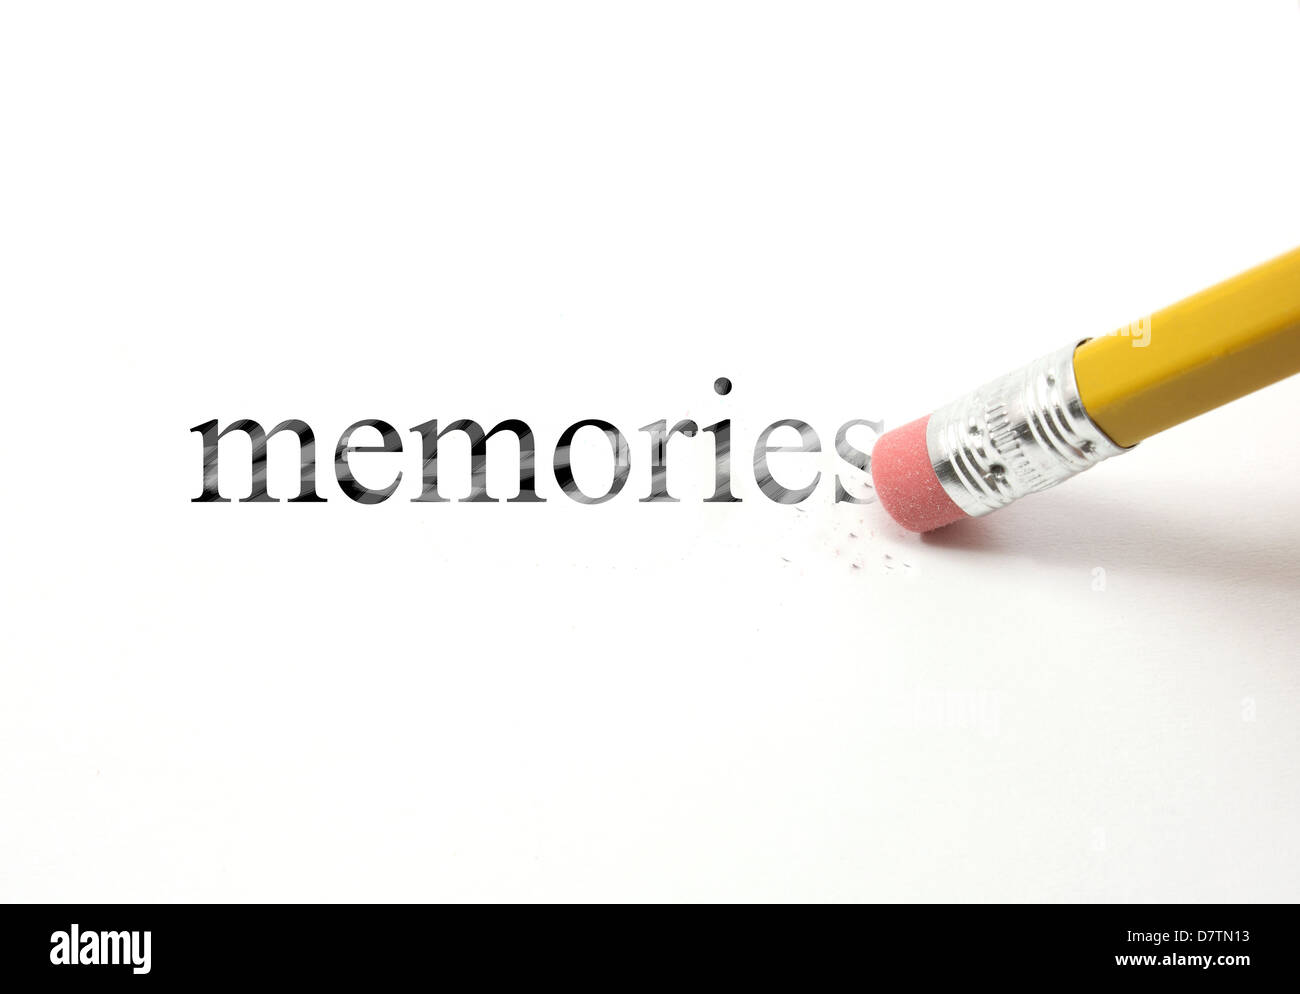 Das Wort Erinnerungen auf weißem Papier mit einem Bleistift geschrieben. Vom Bleistift Radiergummi beginnt, die Wort Erinnerungen zu löschen. Stockfoto